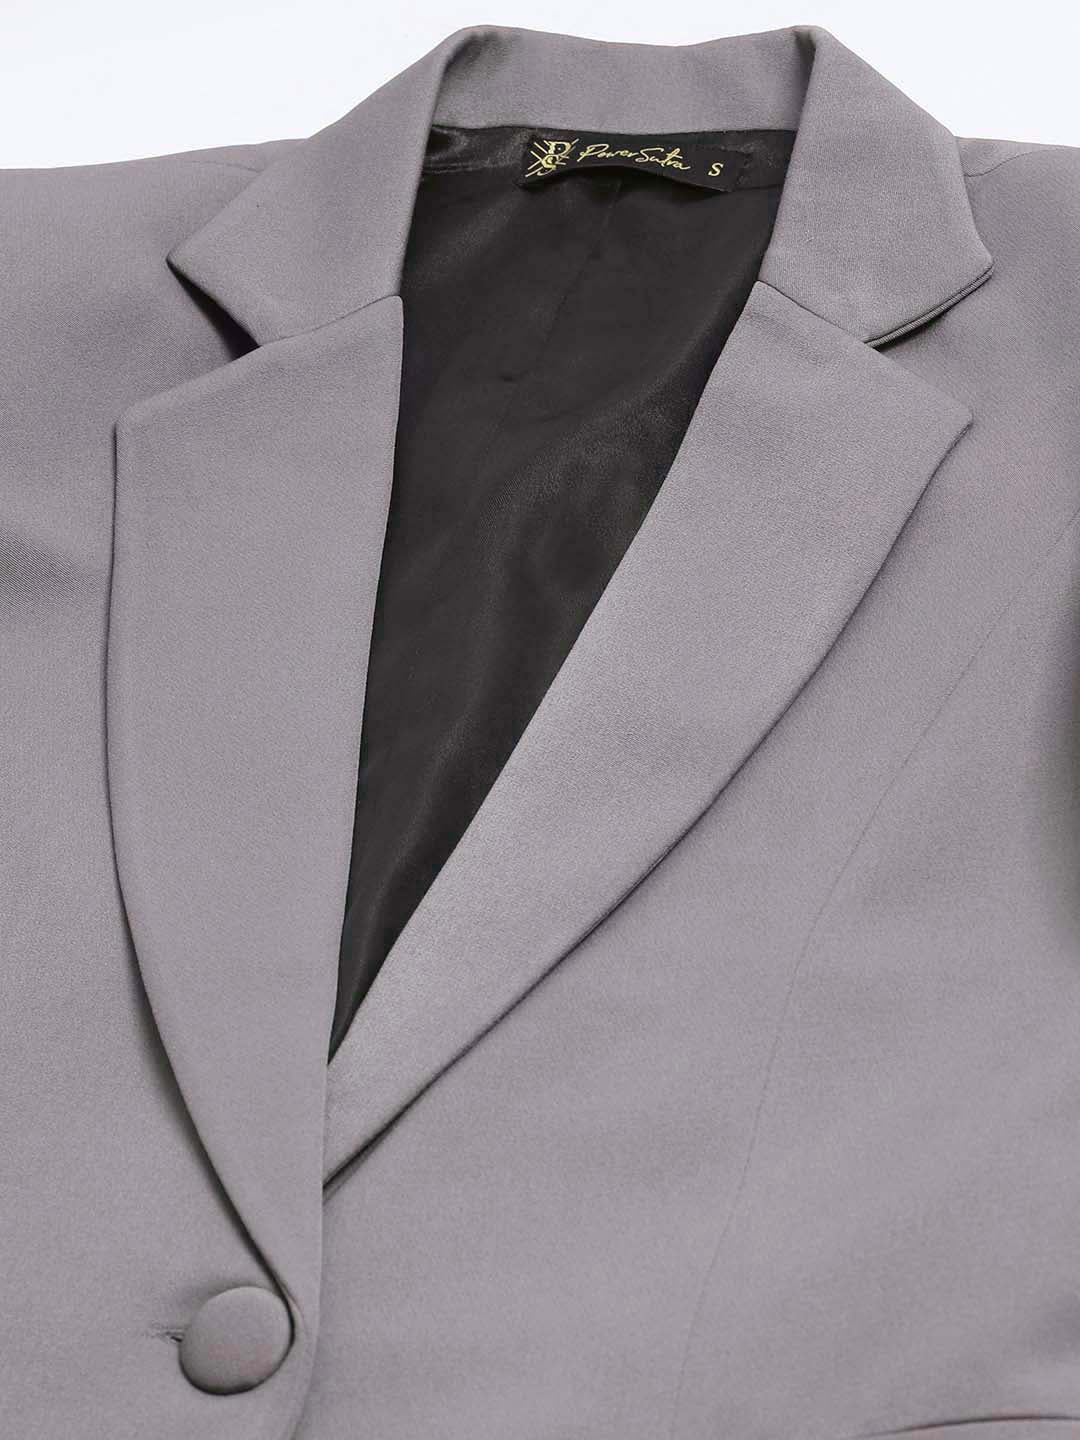 Stretch Pant suit- Grey